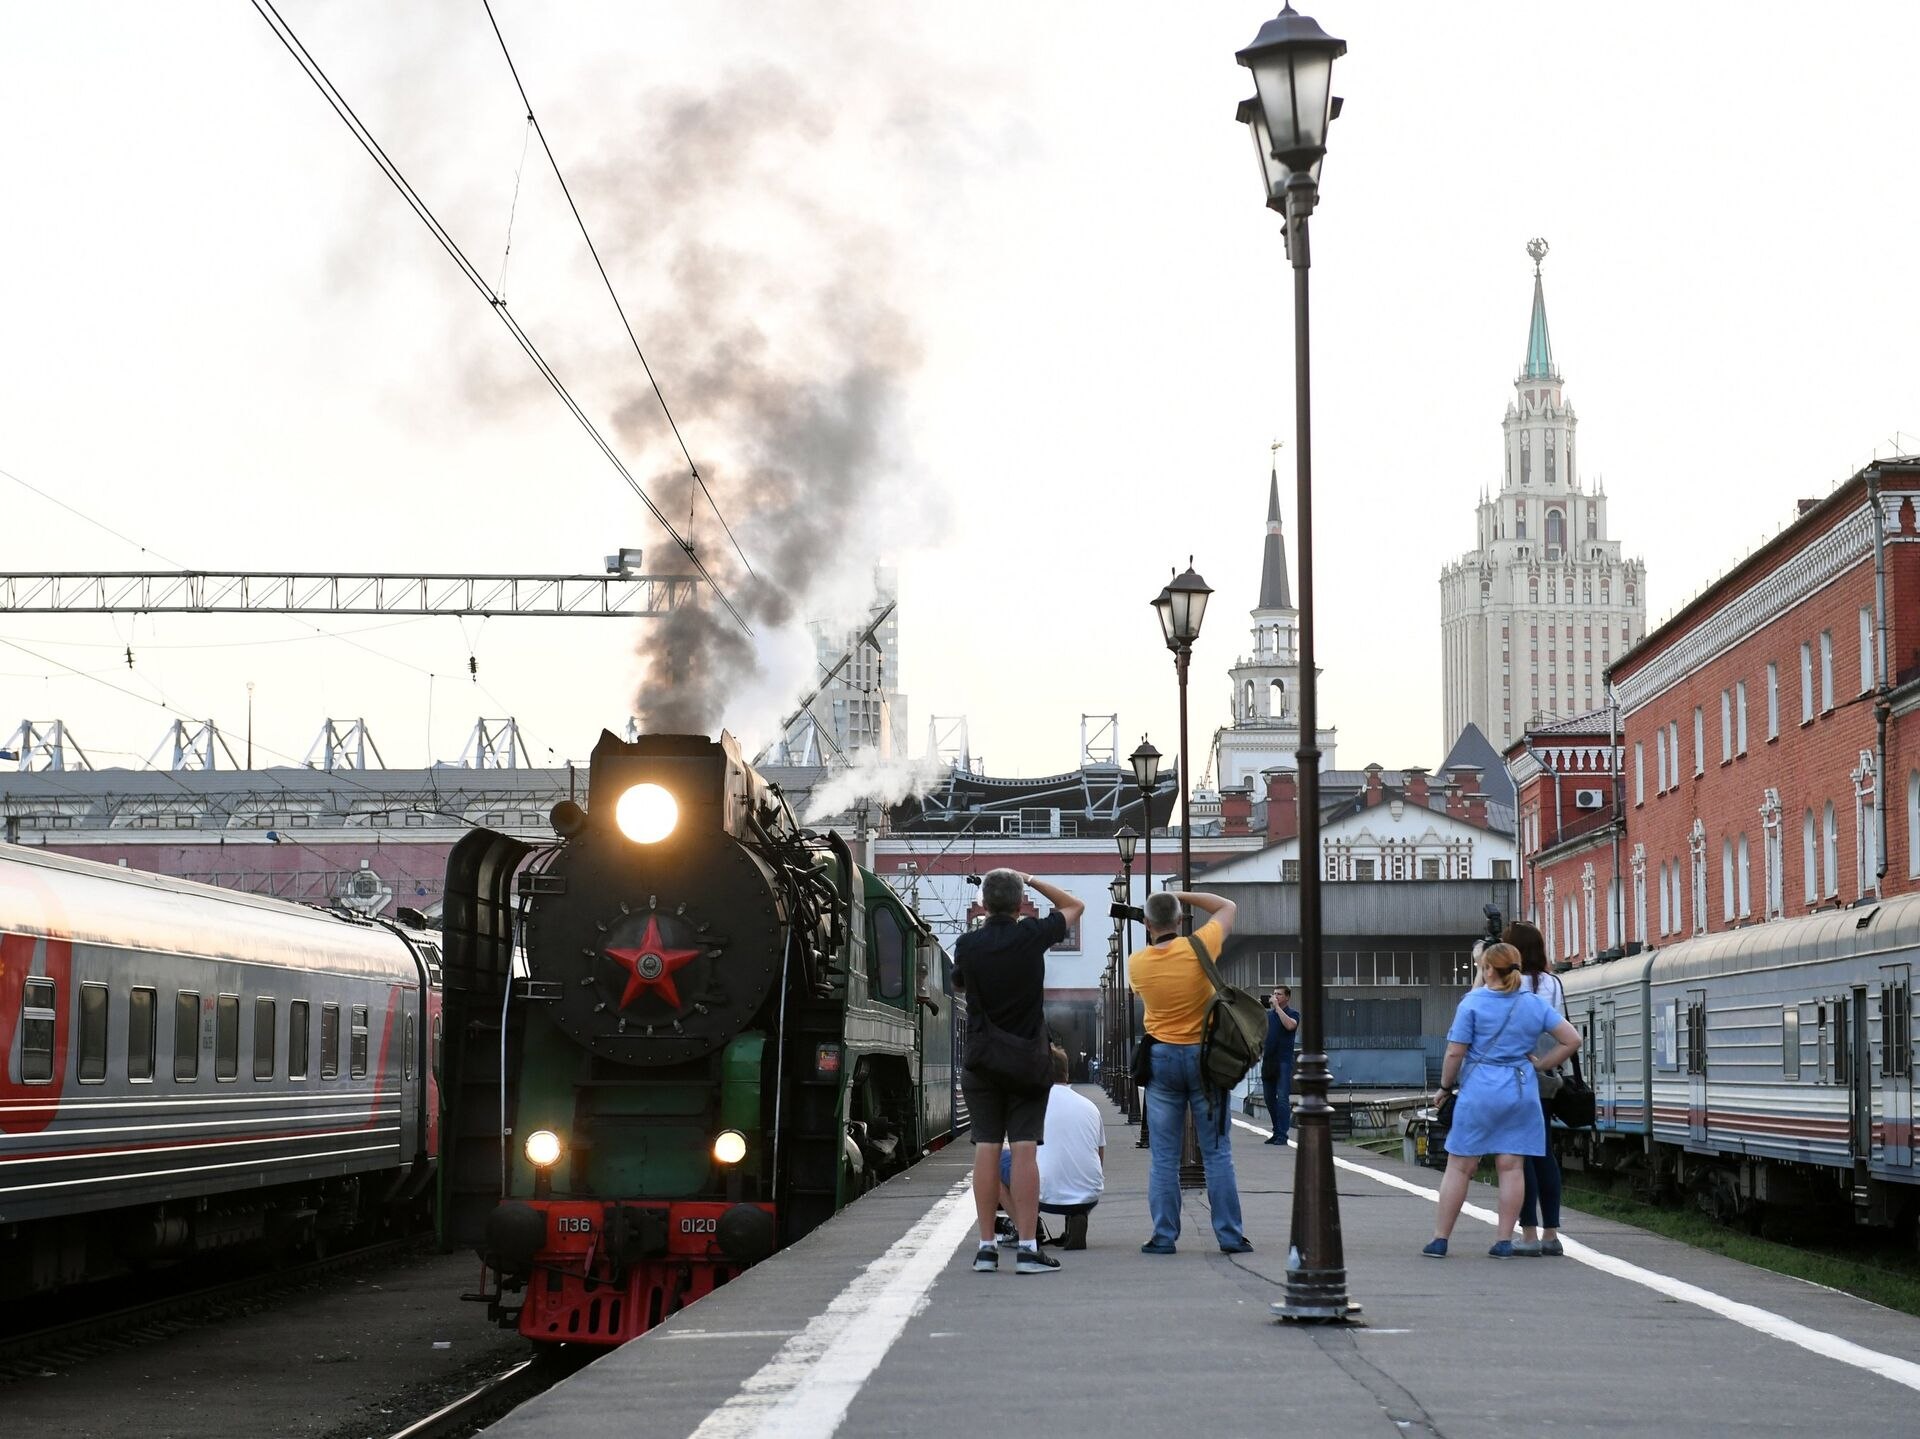 Казанский вокзал поезд москва казань